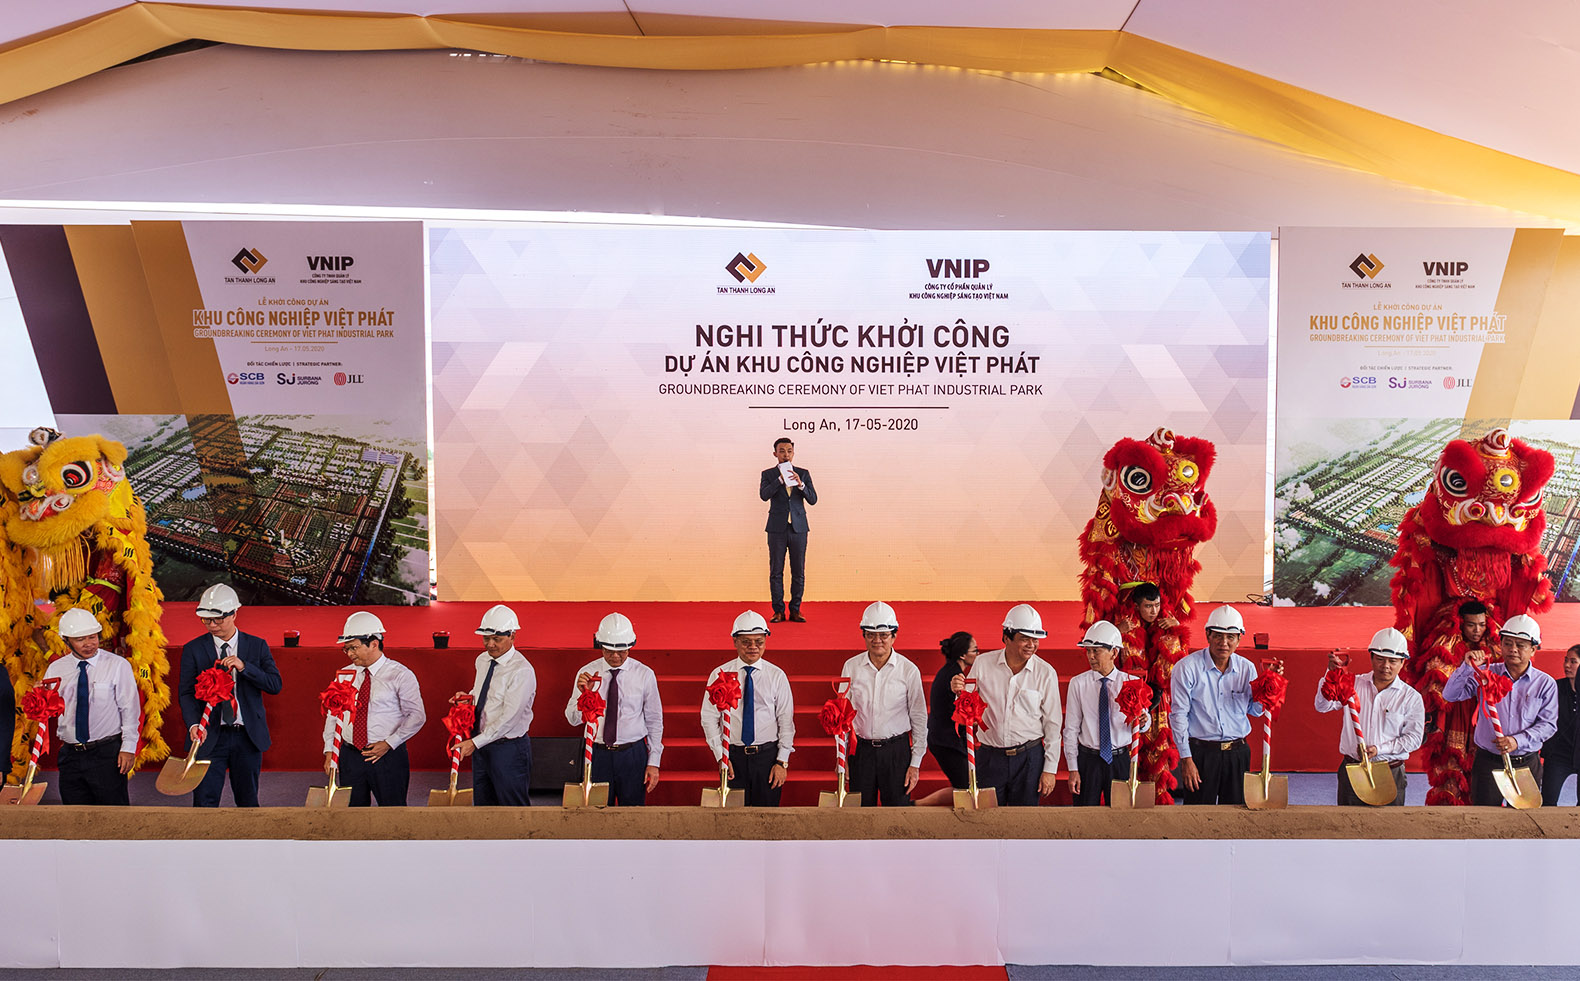 Nguyên Chủ tịch Nước Trương Tấn Sang và các đai biểu thực hiện nghi thức khởi công Khu công nghiệp Việt Phát